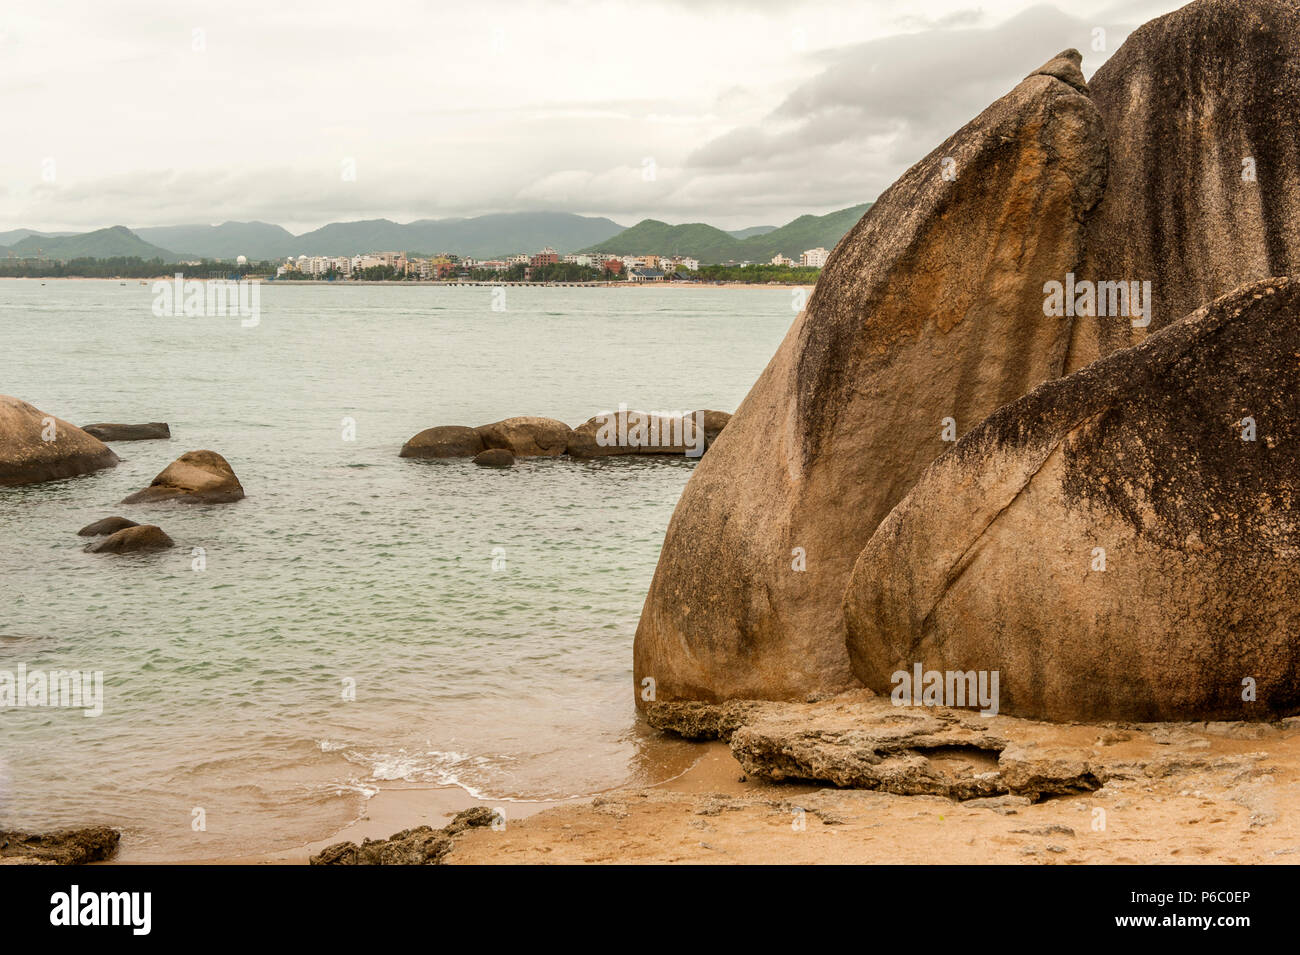 Die Bucht von tianya Haijaio Markierungen auf Chinesisch das "Ende der Welt". Es durch riesige Granitfelsen begrenzt wird. Stockfoto